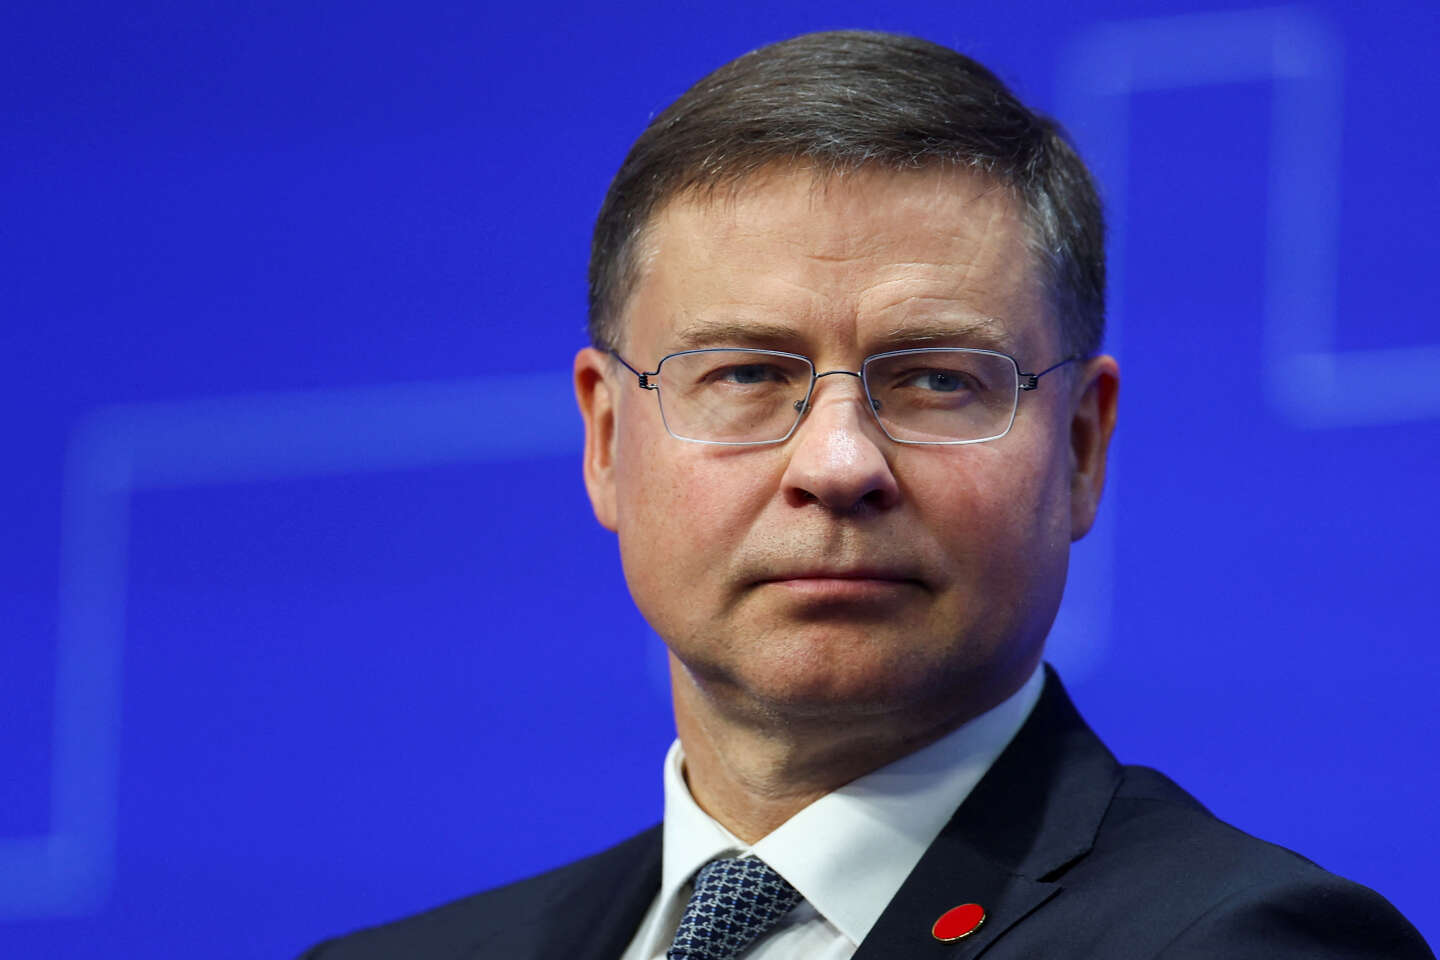 Le vice-président de l’exécutif européen, Valdis Dombrovskis, en opération déminage en Chine